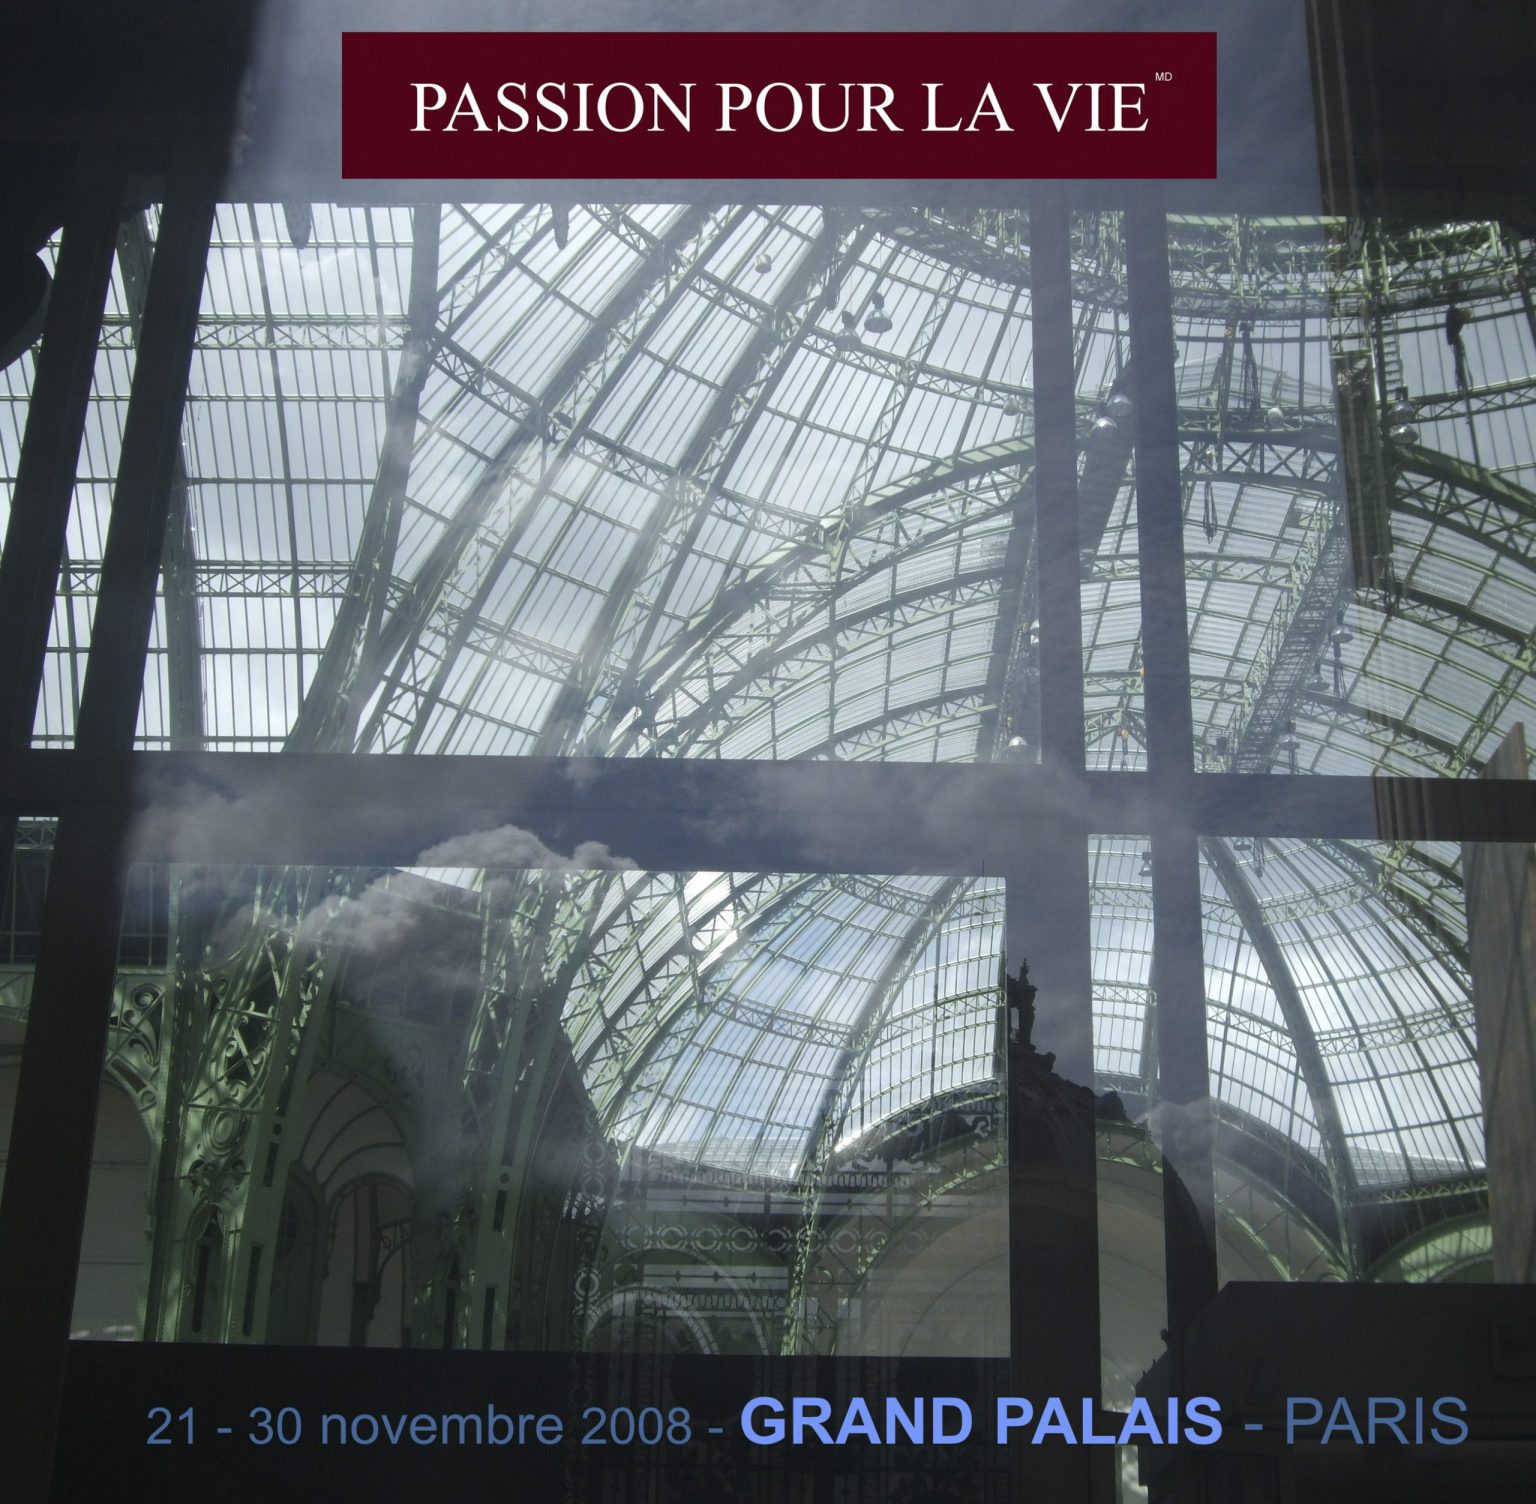 L’evento artistico PASSIONE PER LA VITA di Antoine Gaber nel Grand Palais des Champs Elysées a favore del Institut Curie. Il catalogo con tutti gli artisti che hanno aderito a questa iniziativa, fatto specialmente per il Programma “Passione per la Vita”